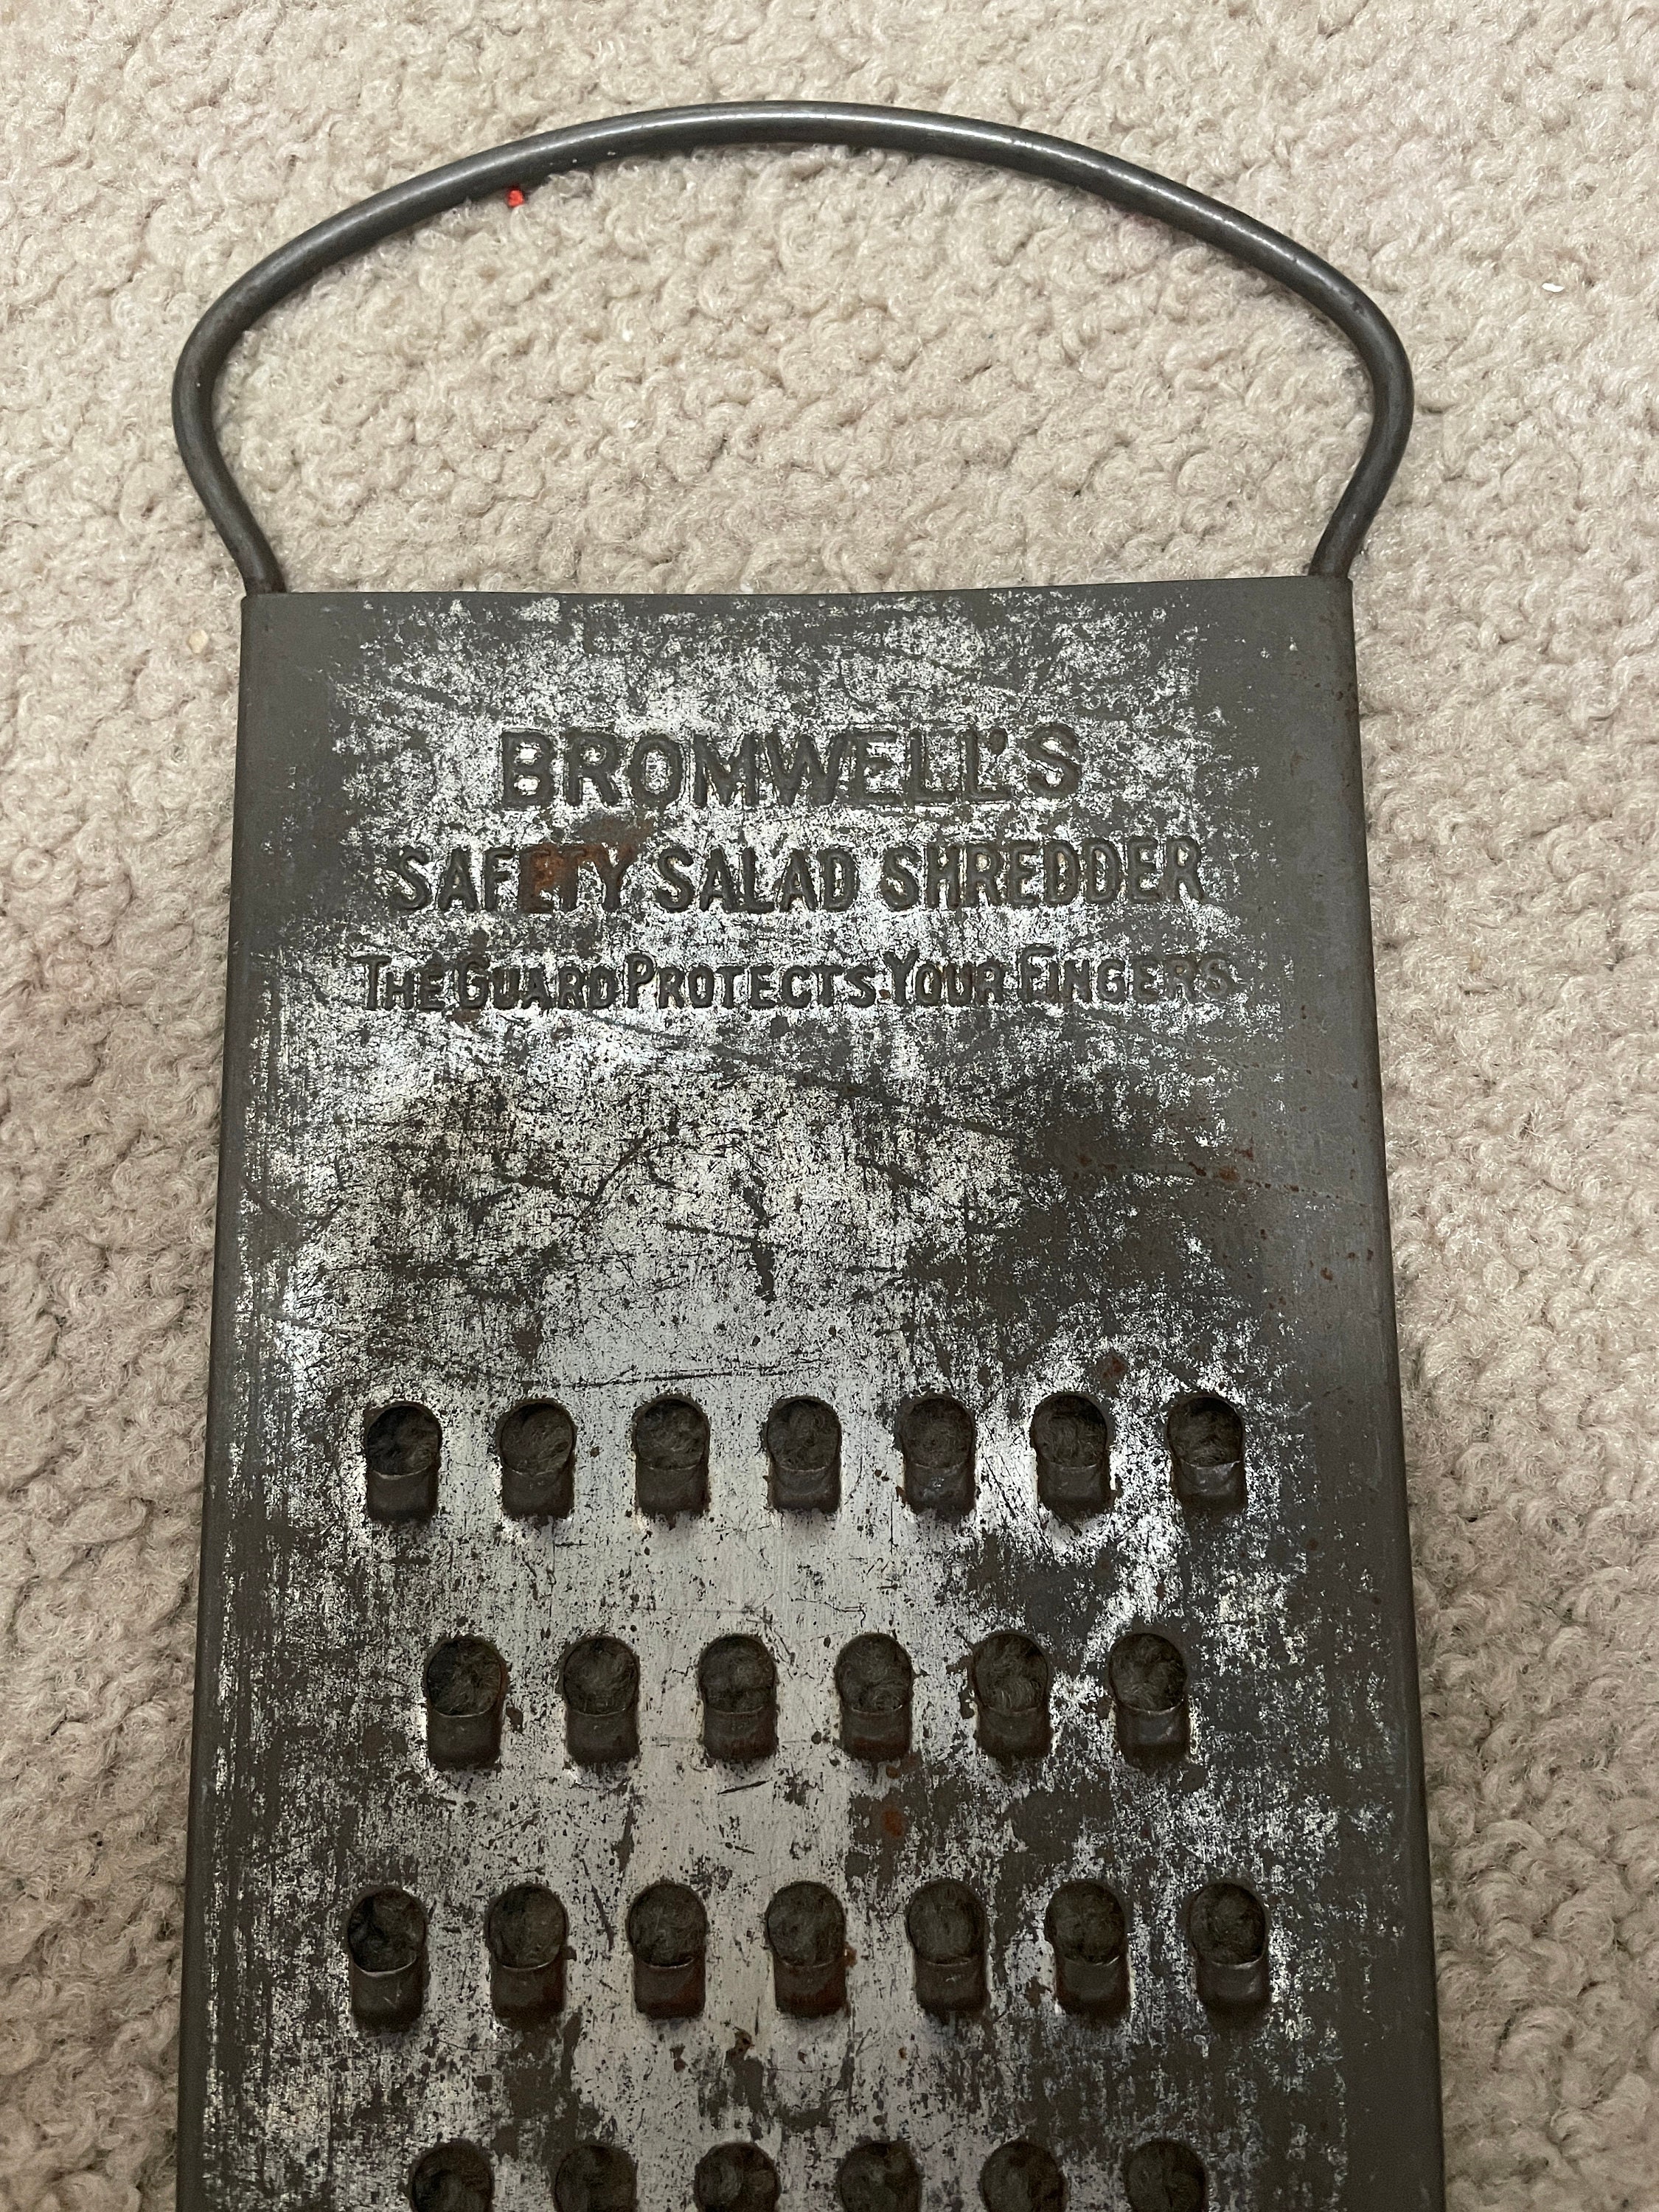 Vintage Shredder, Bromwells, Safety Salad Shredder, Grater With